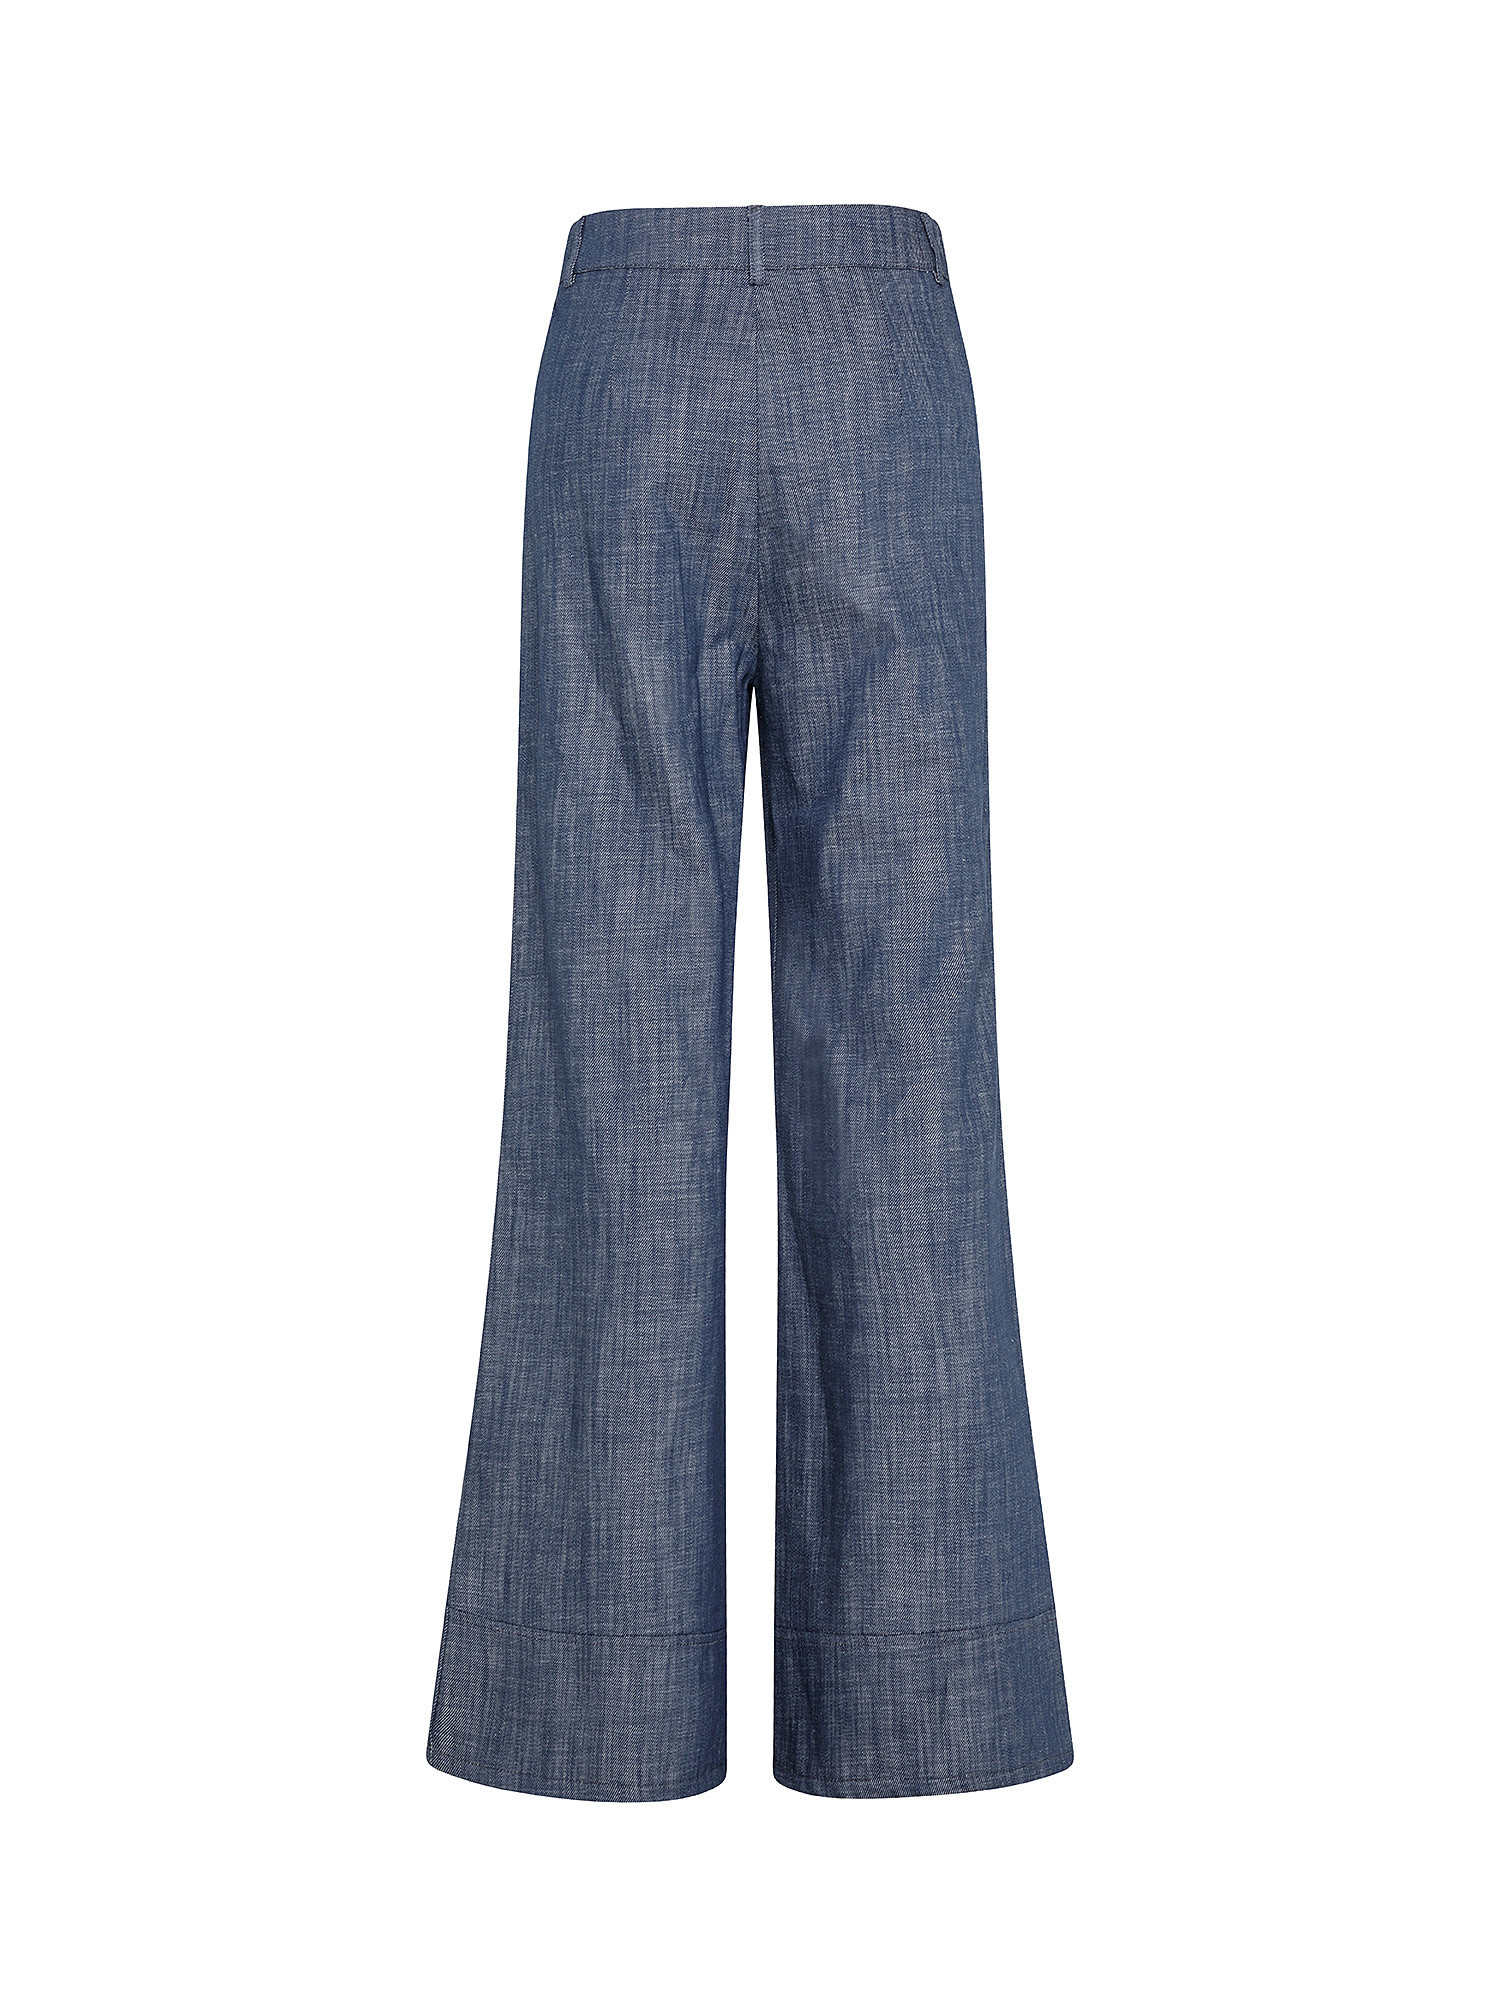 Five-pocket trousers, Denim, large image number 1